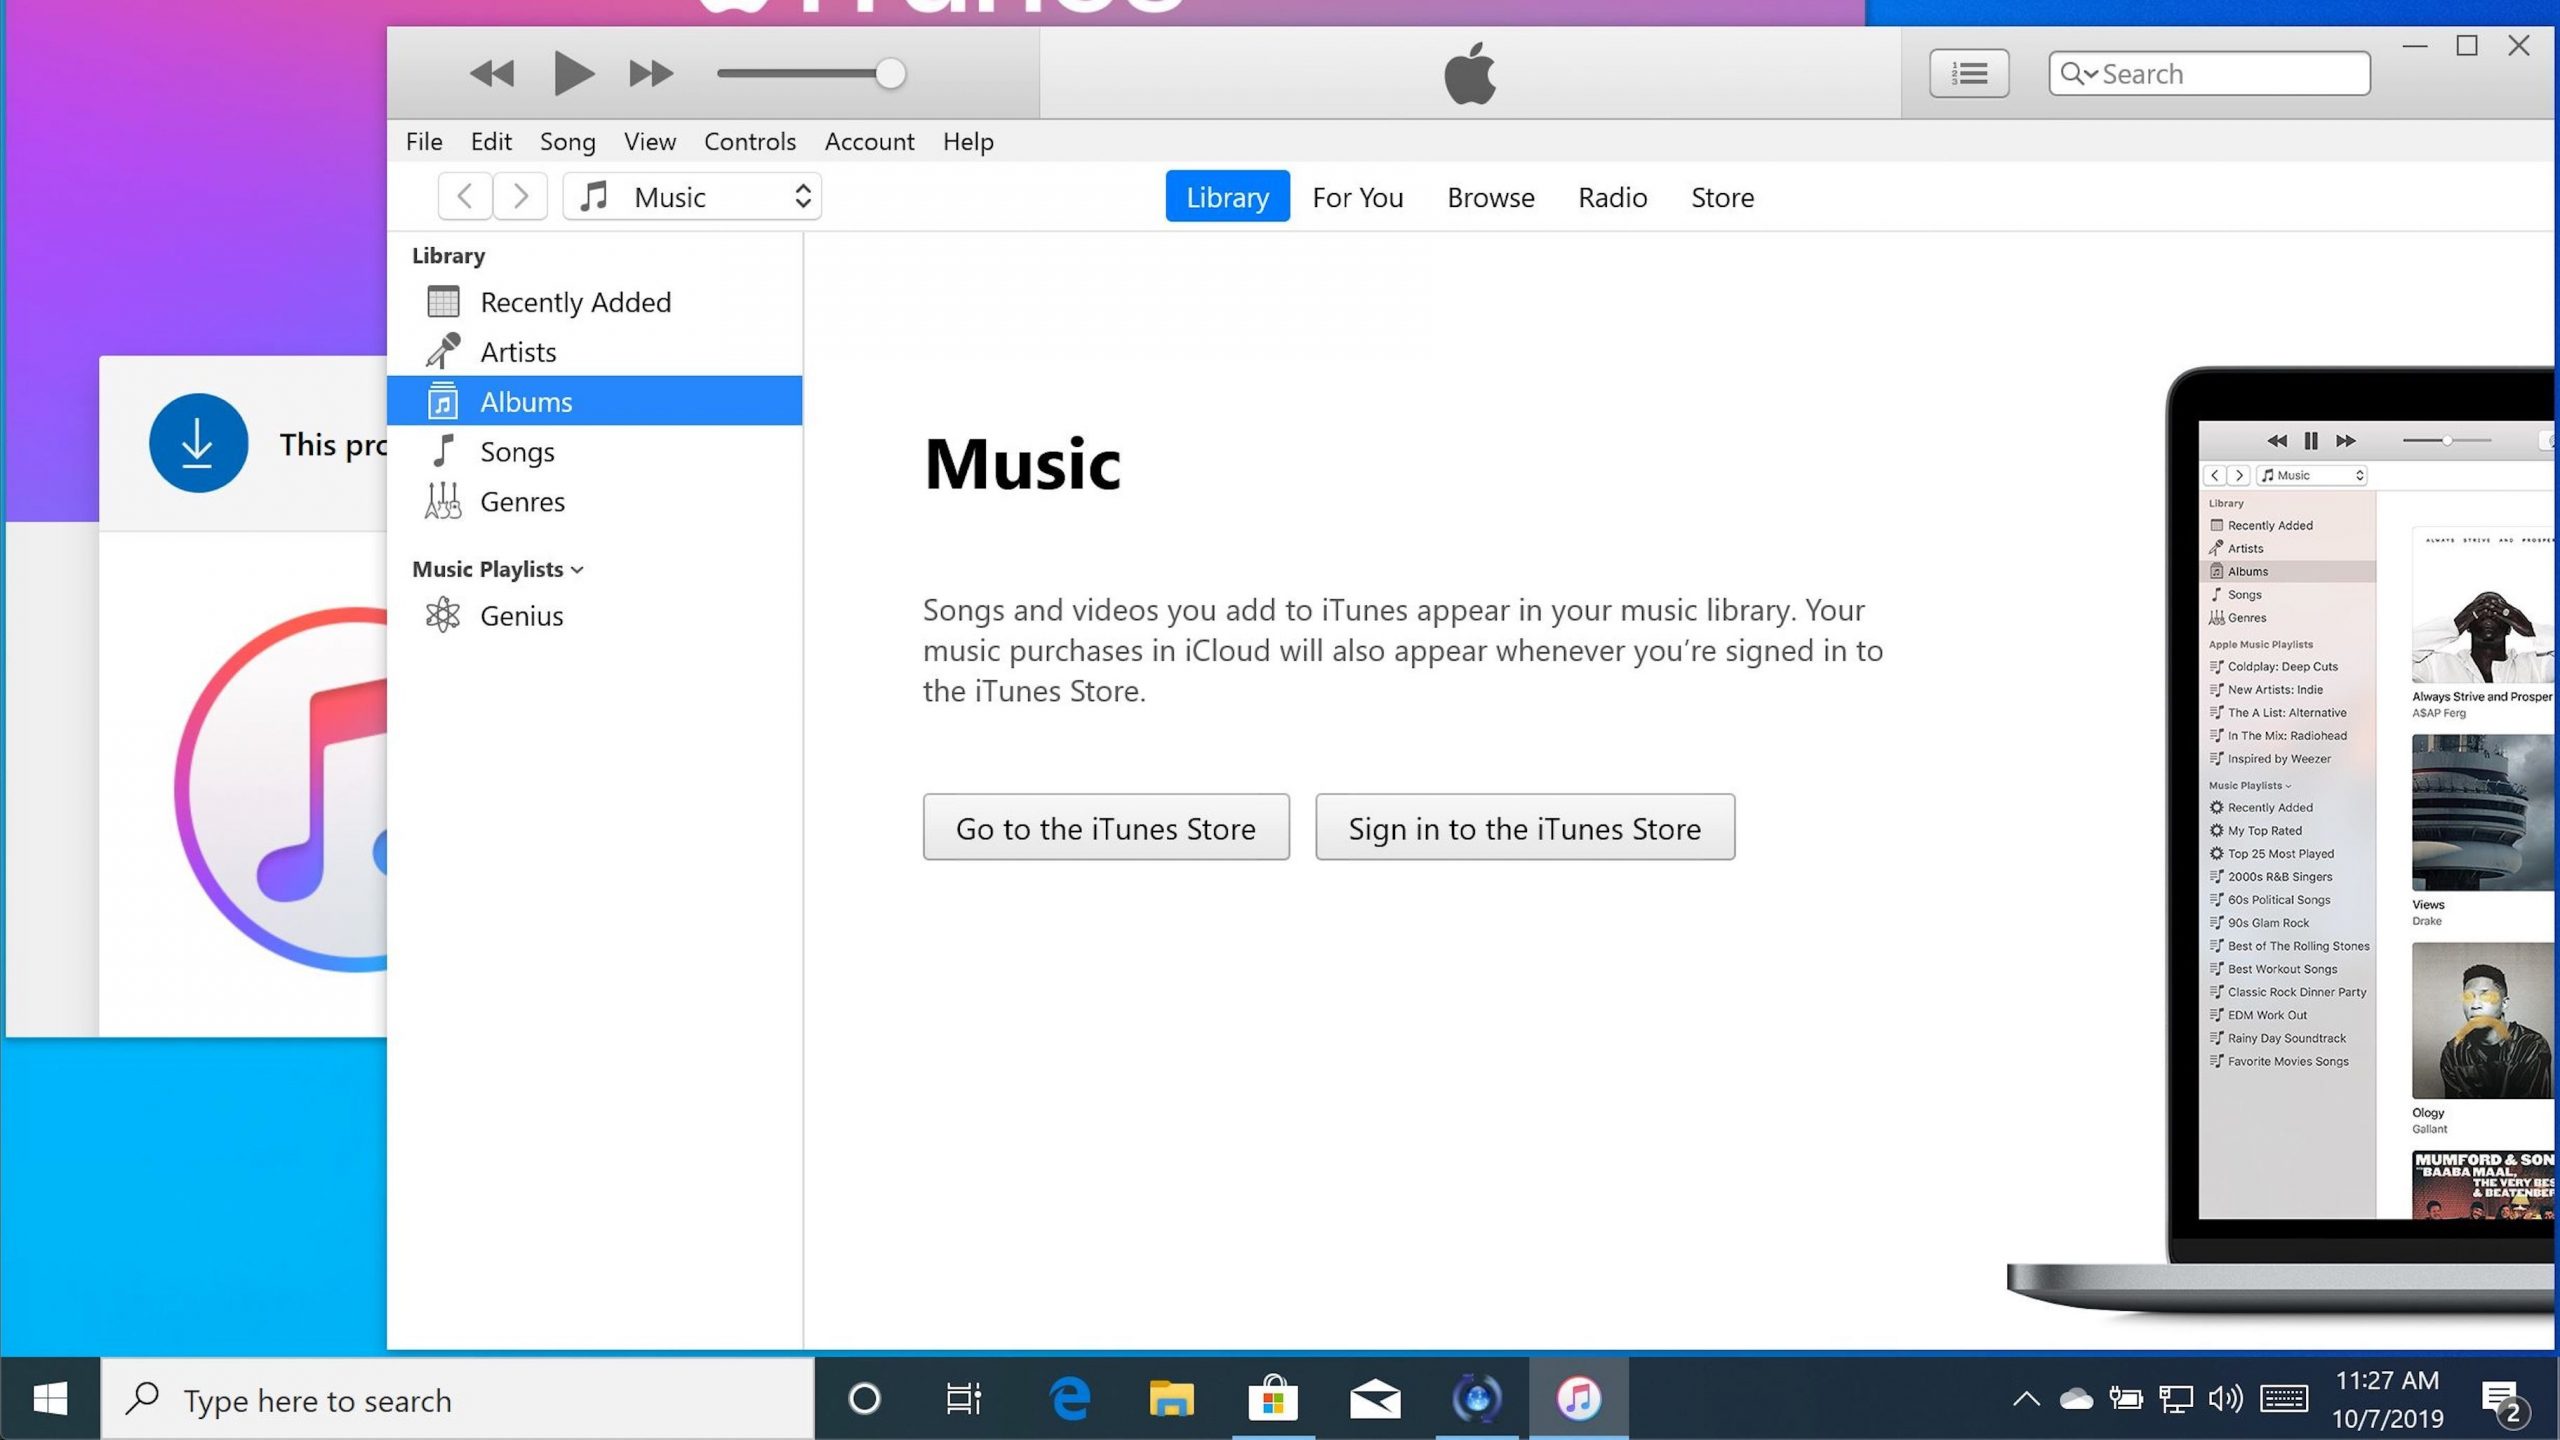 iTunes Crack + Keygen 12 Latest Version